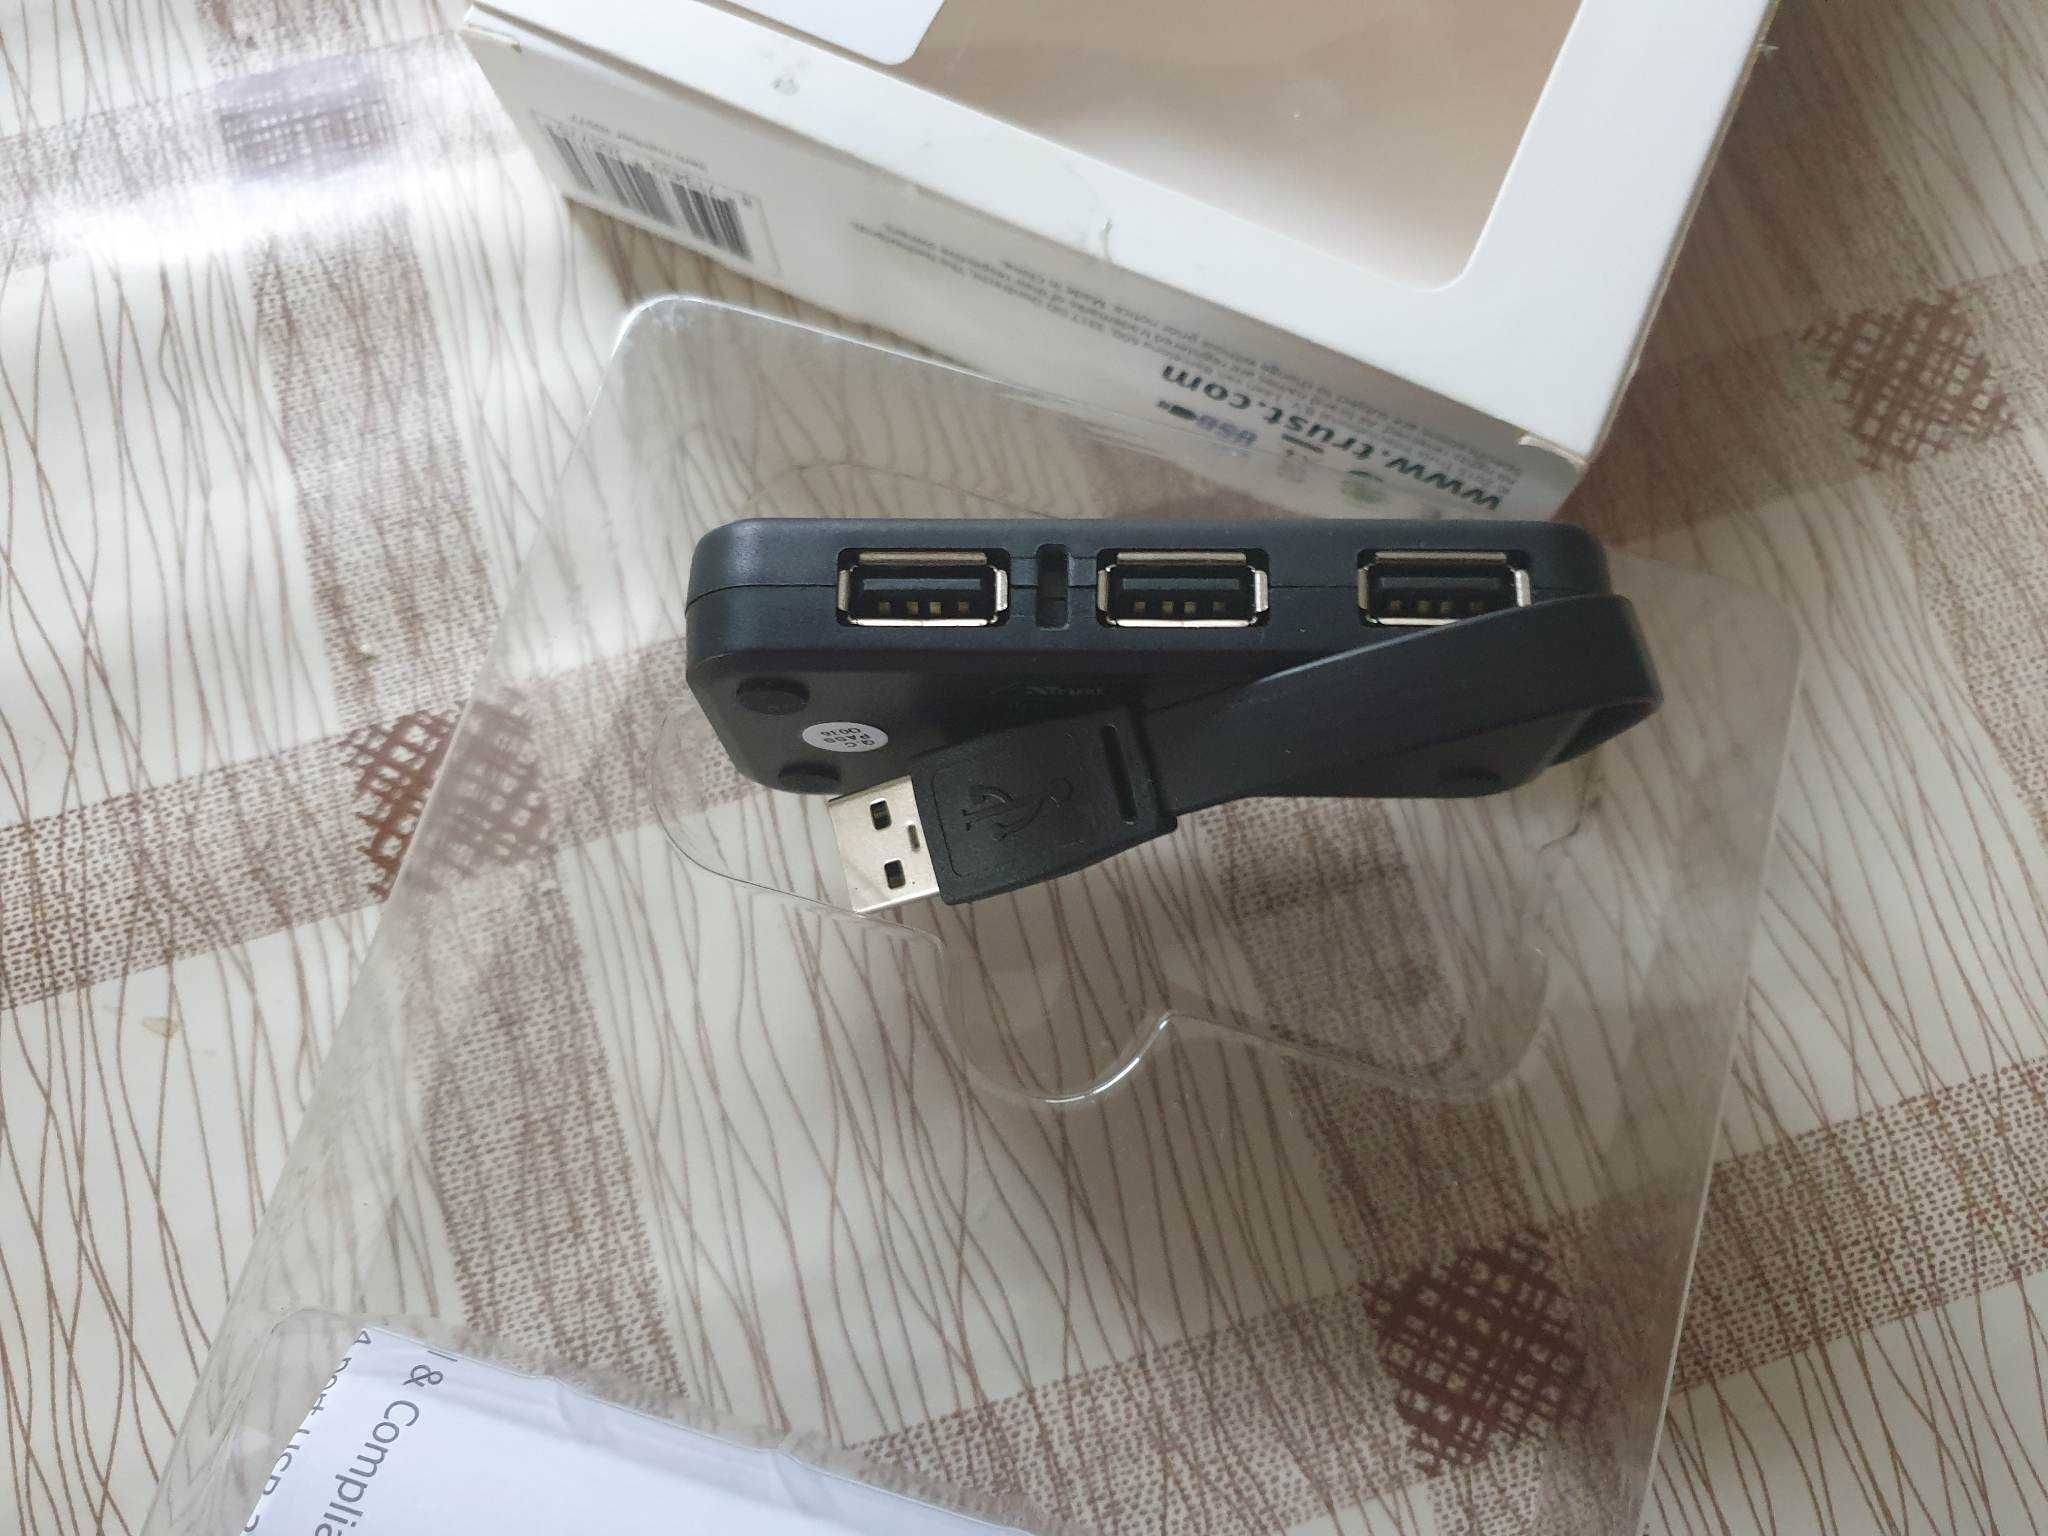 4 ports USB 2.0 hub